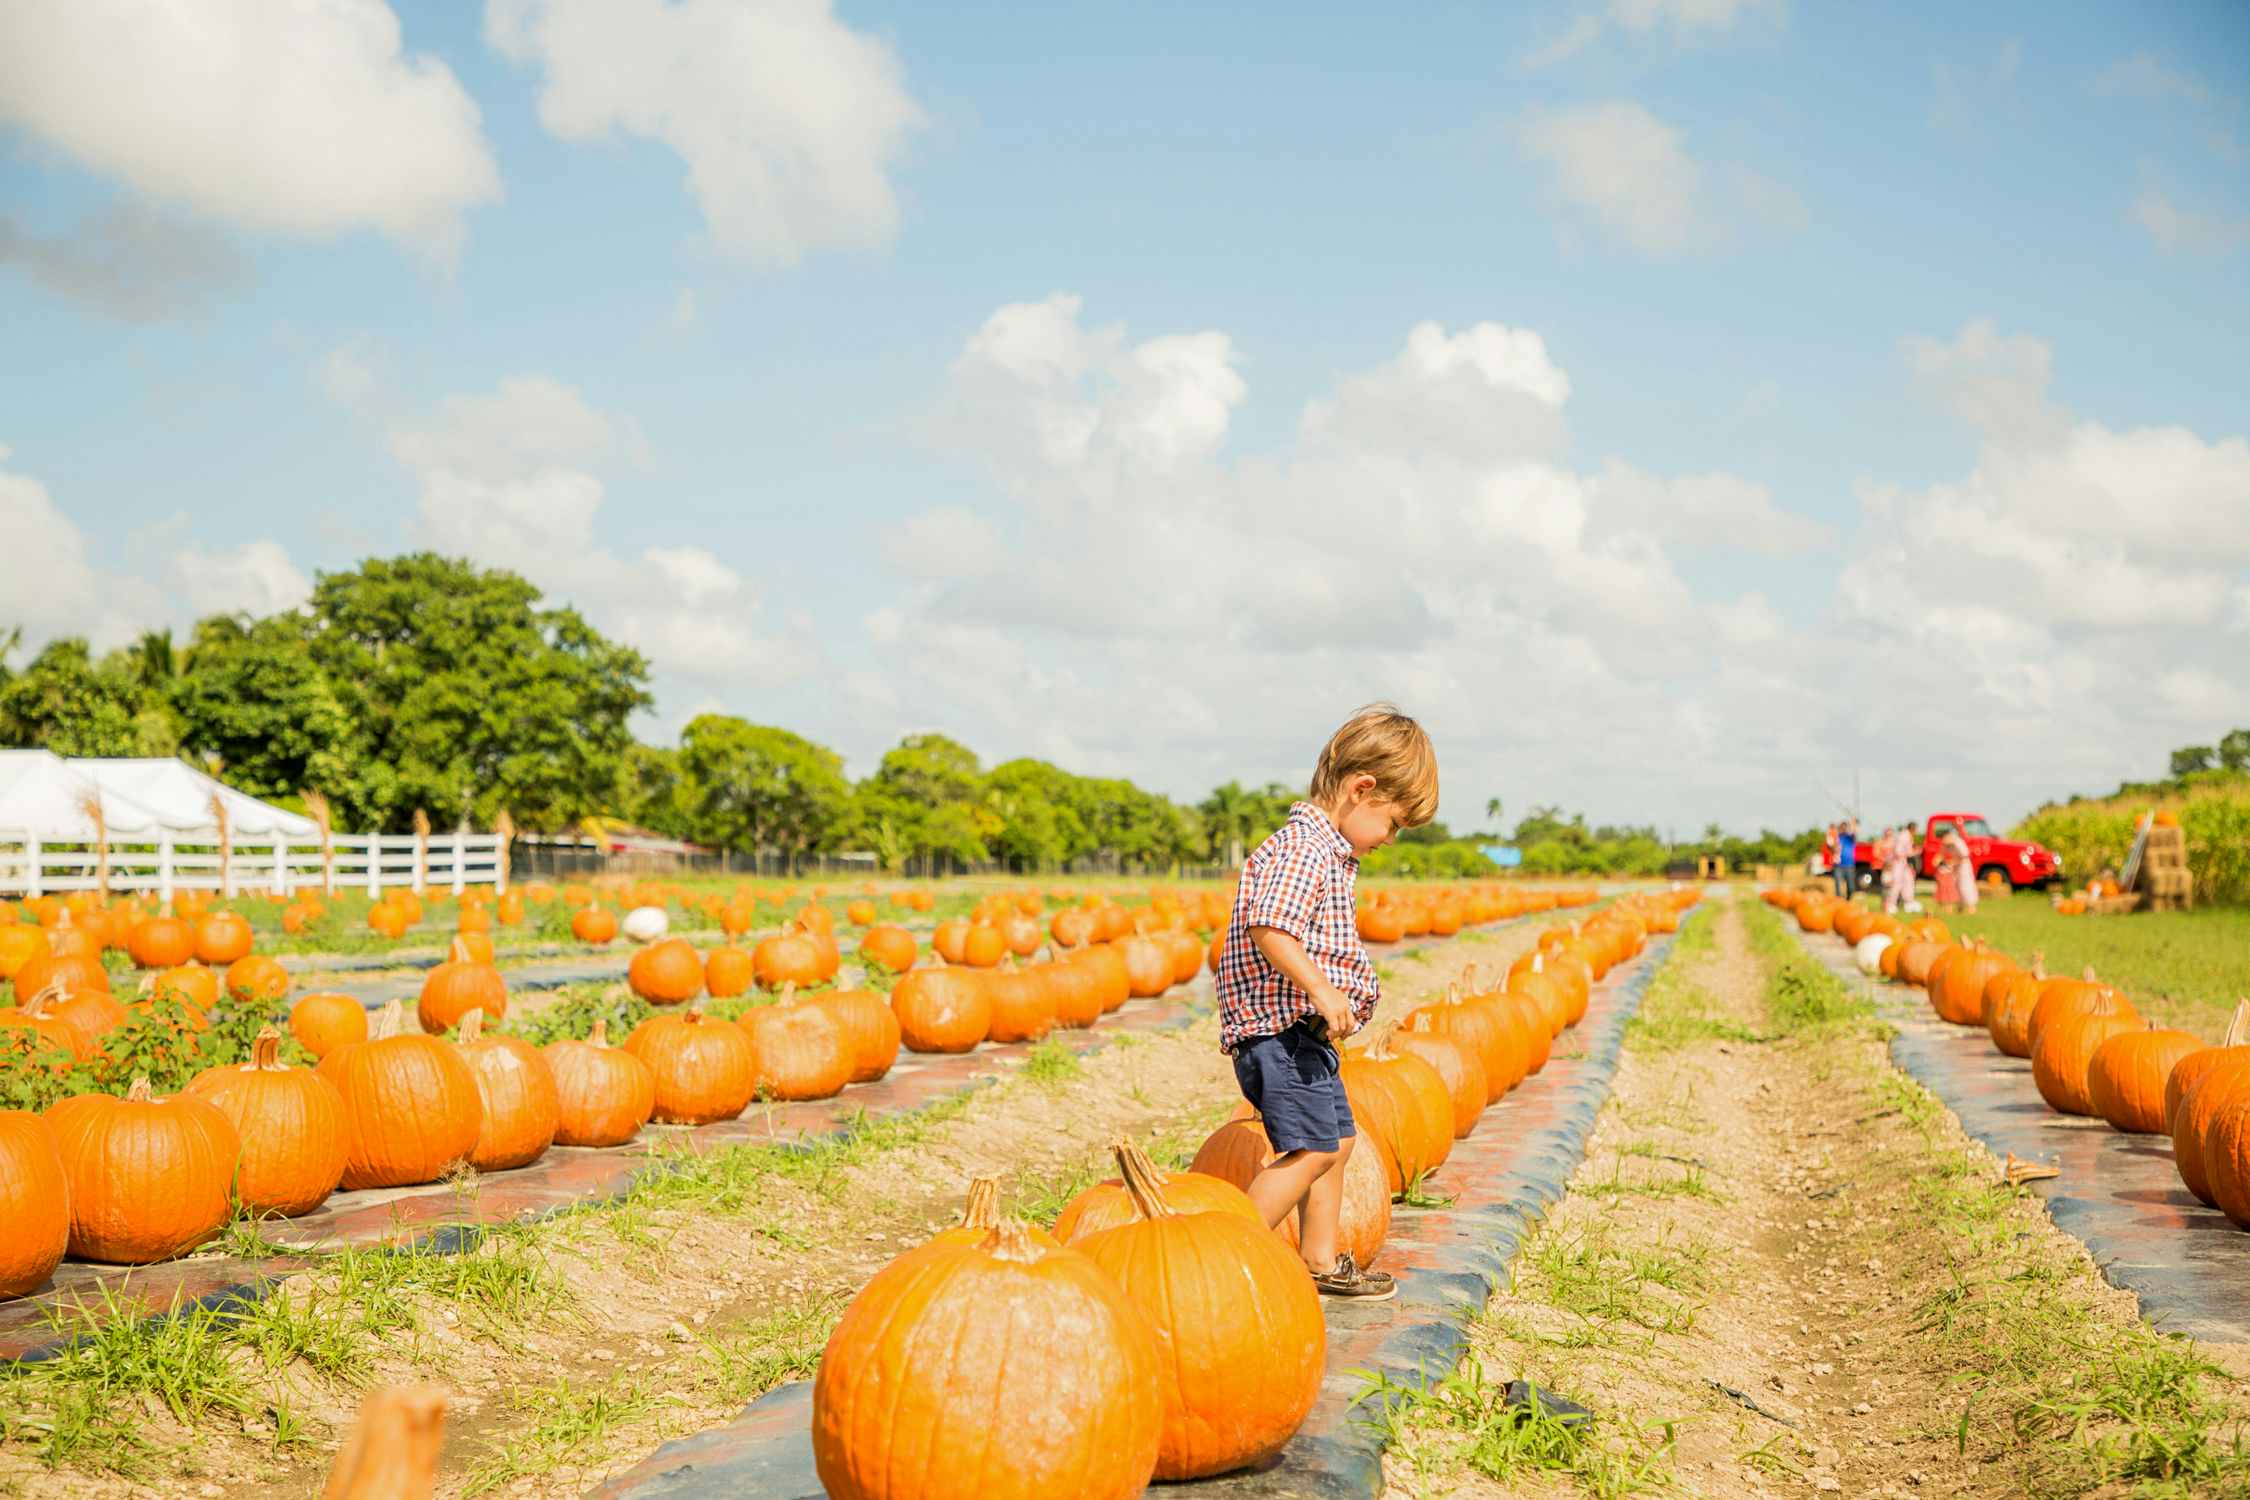 young boy walking in pumpkin patch field